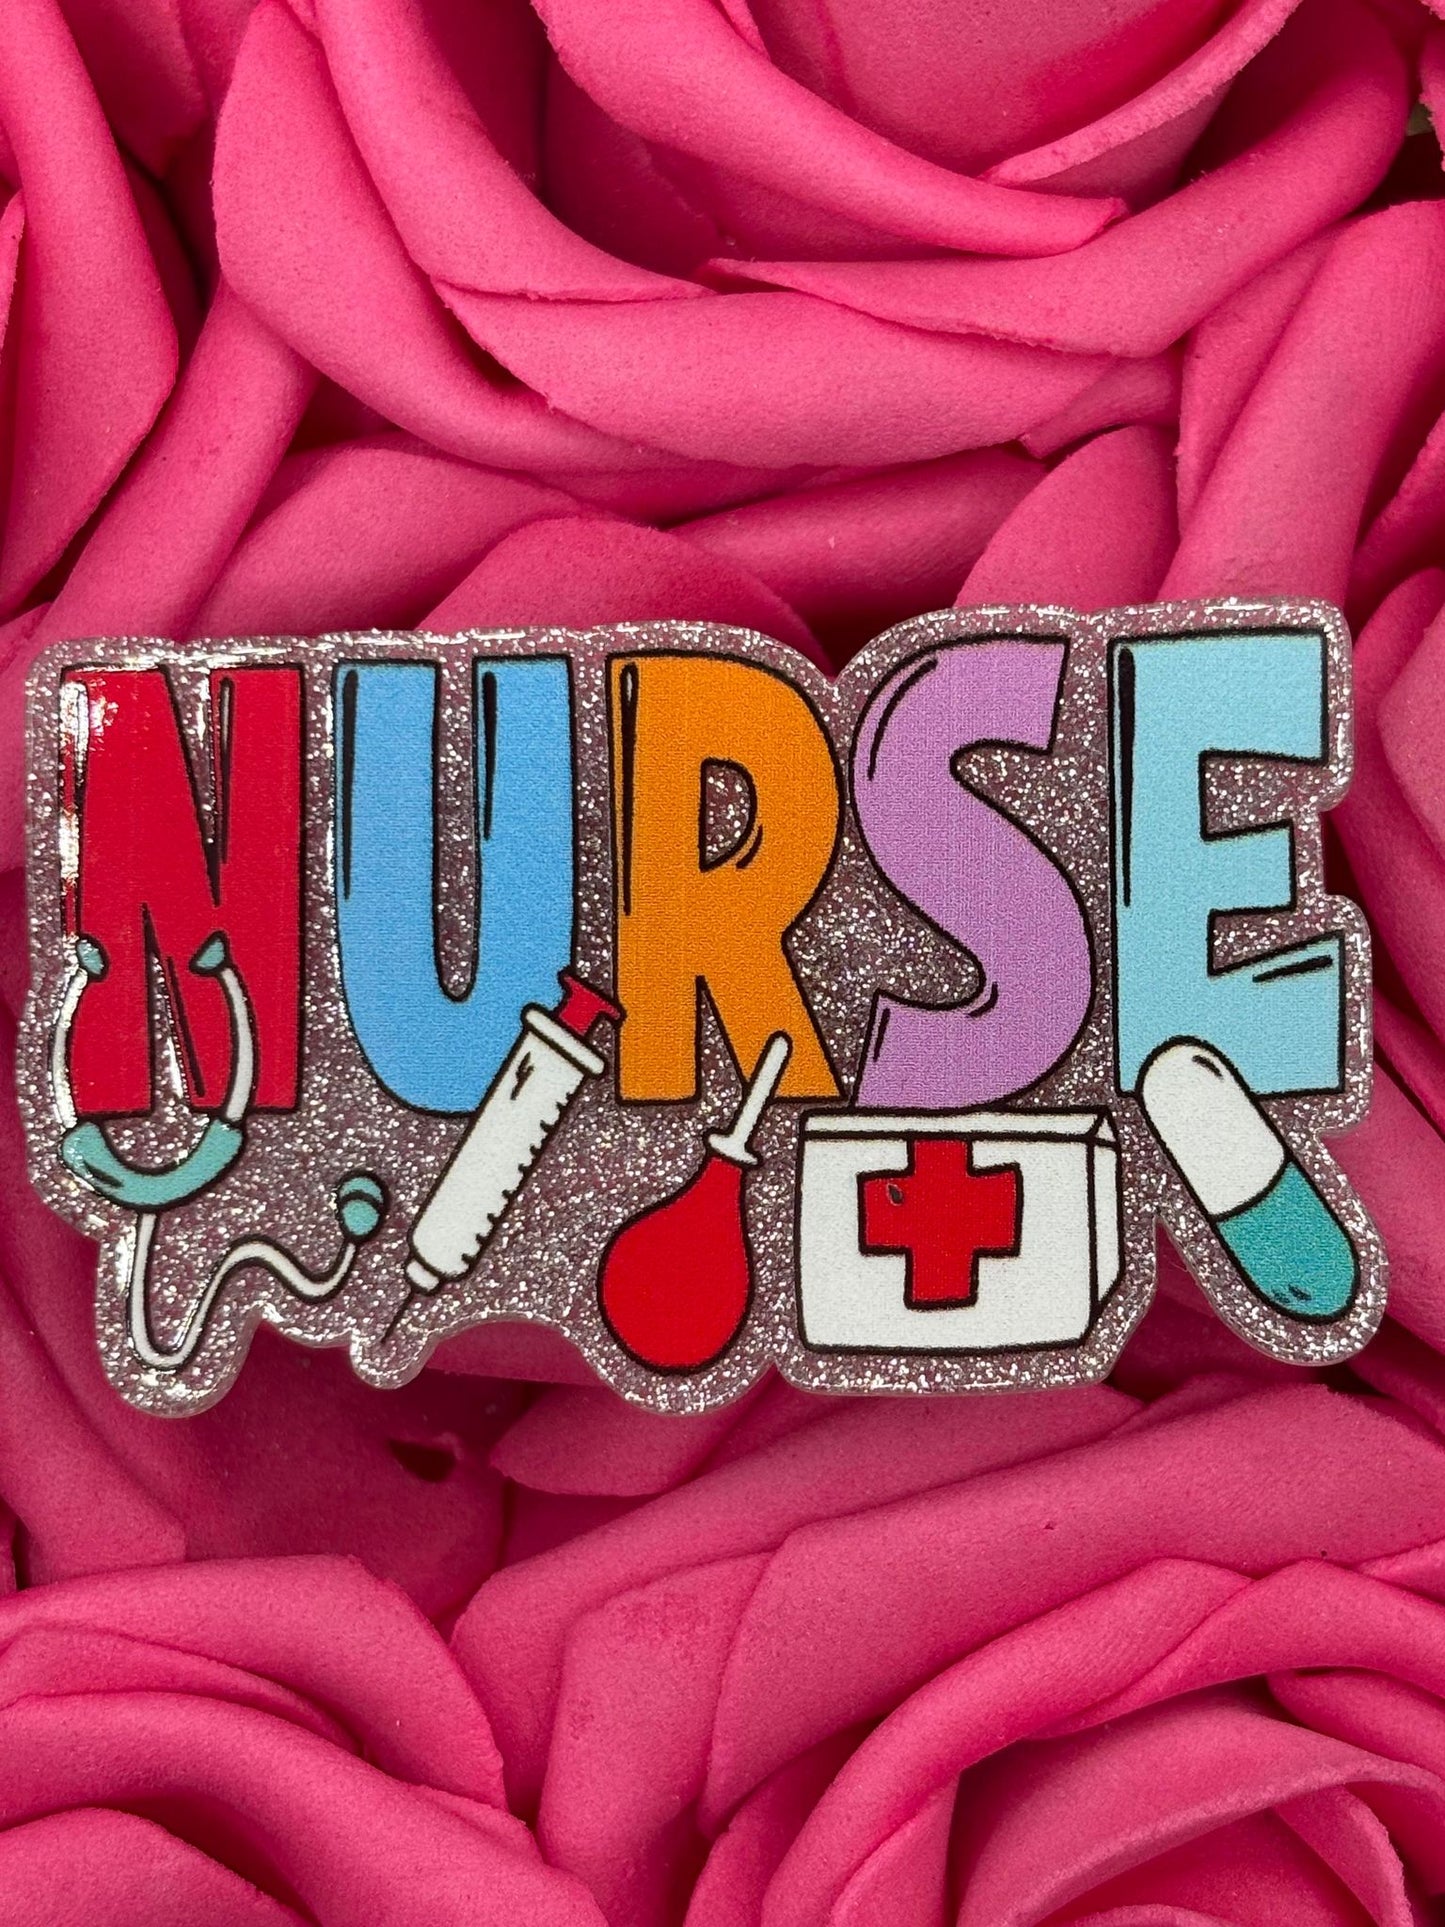 #3035 Nurse